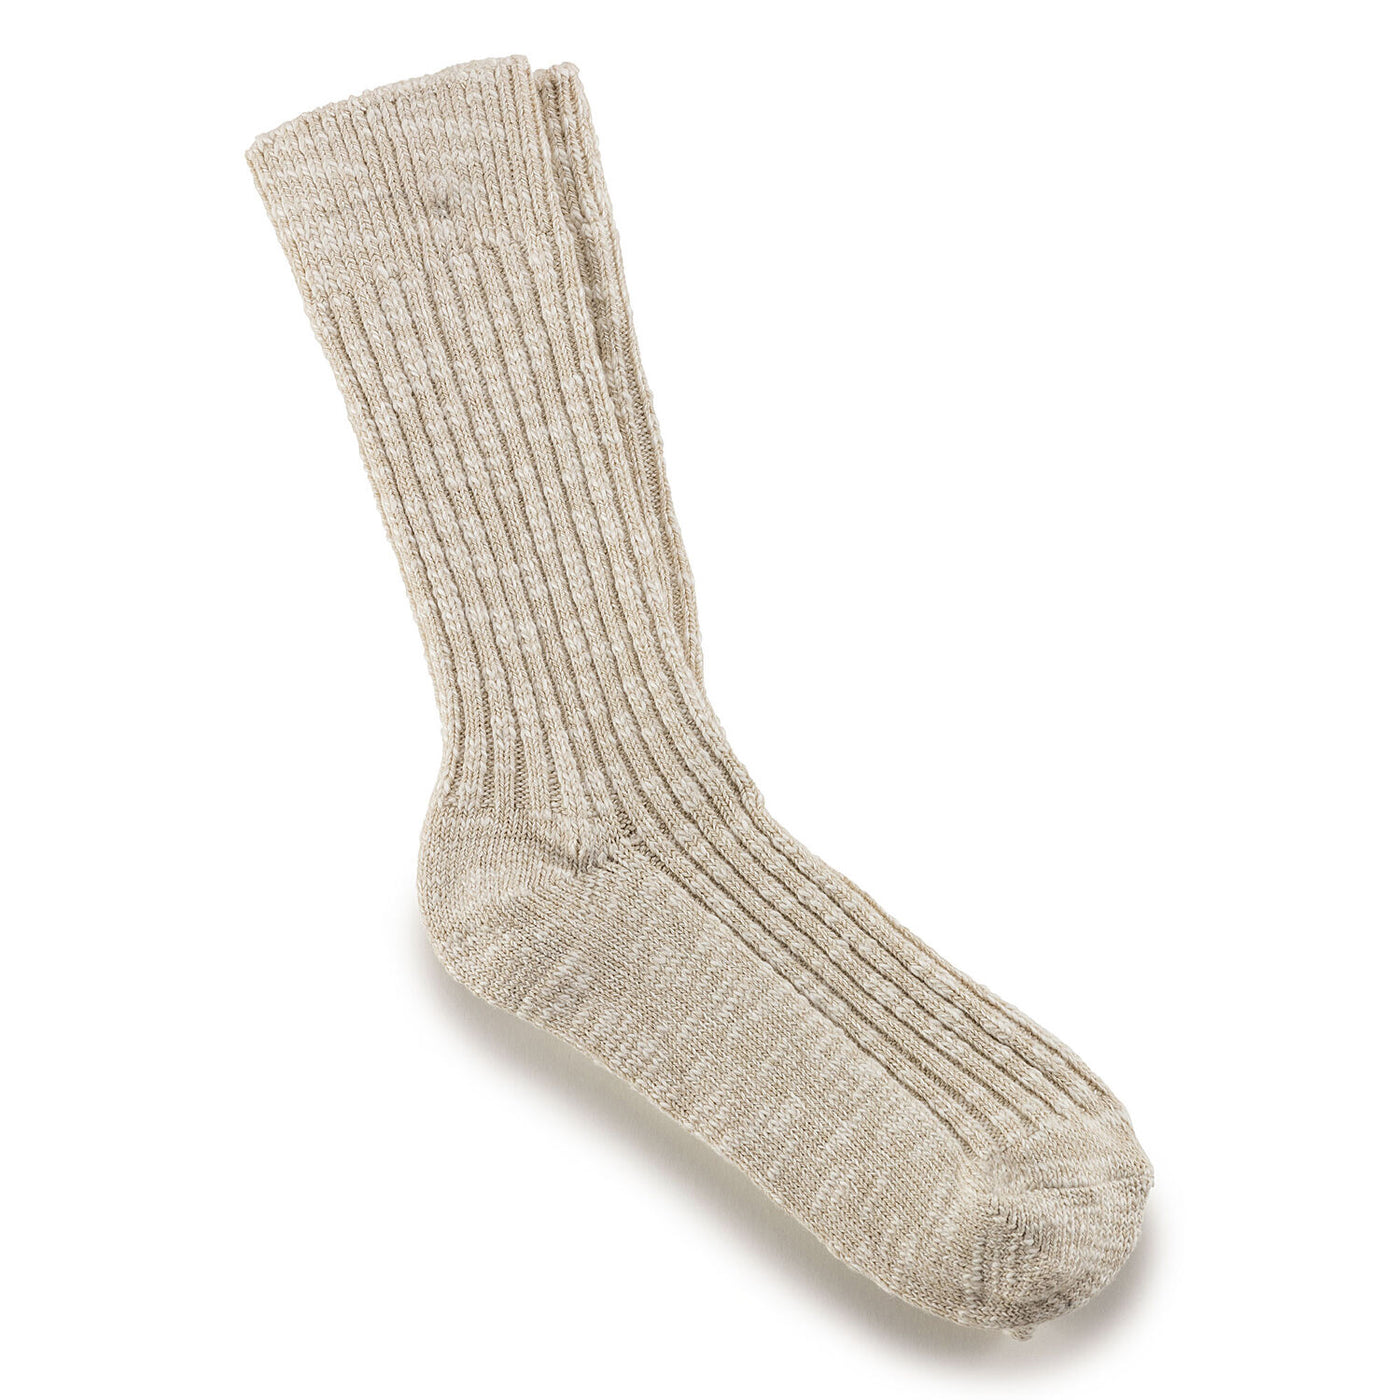 Birkenstock - Cotton Slub Socks -Beige/White